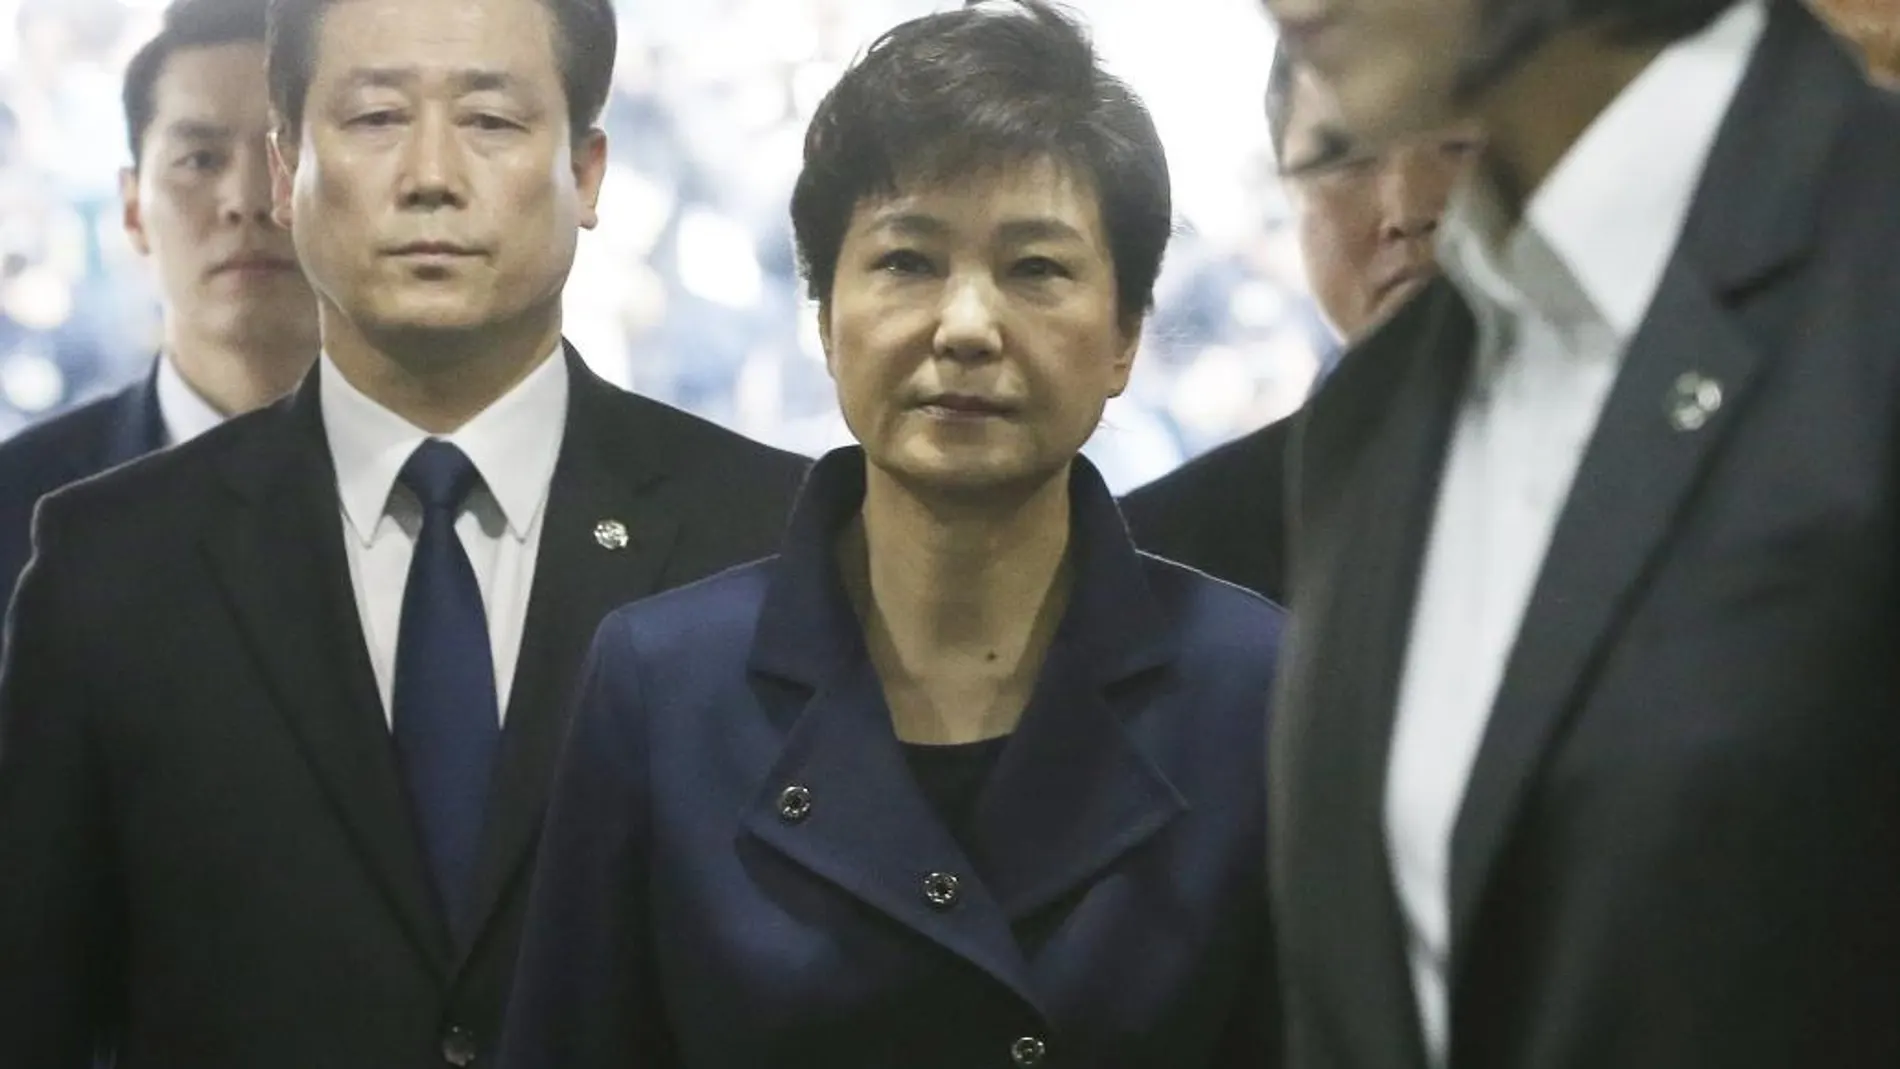 La expresidenta de Corea del Sur Park Geun-hye (c) llega a una corte de distrito para una audiencia sobre su arresto domiciliario, en Seúl